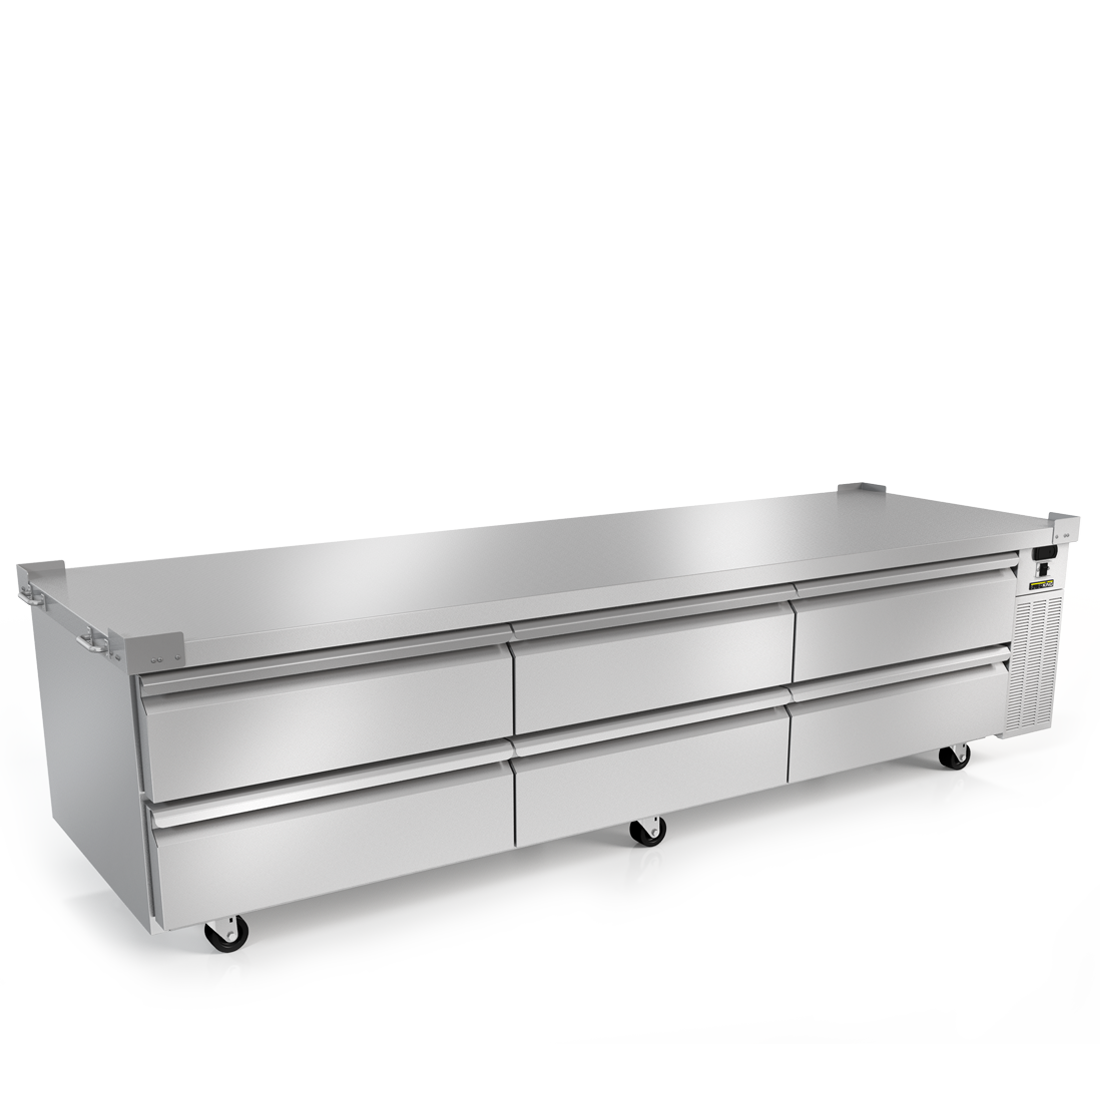 Silver King SKRCB97H-EDUS1 | 97" Wide 6 Drawer Chef Base Refrigerator